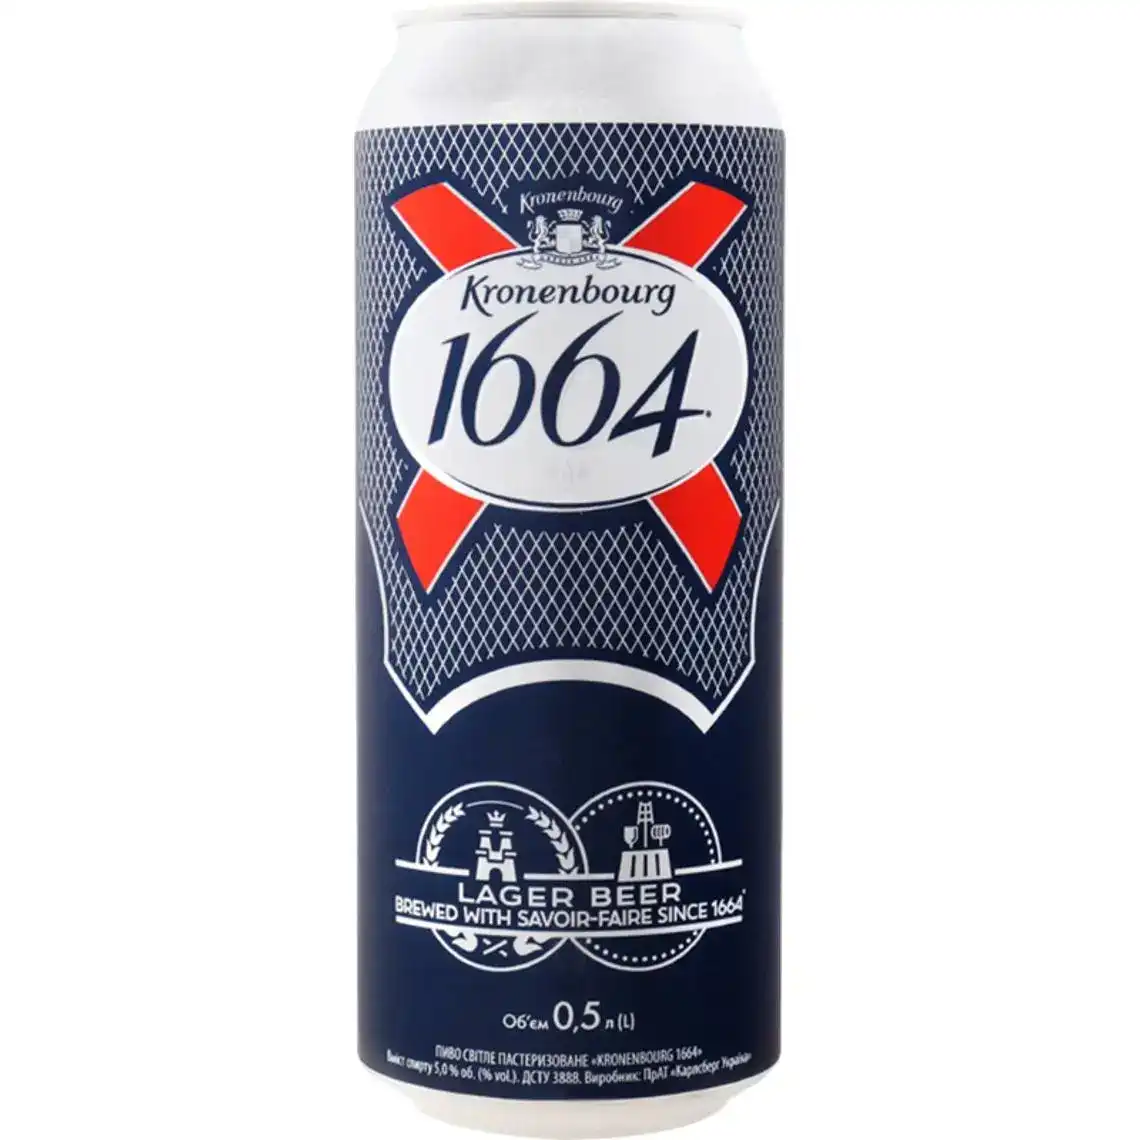 Пиво Kronenbourg 1664 4.8% 0.5 л